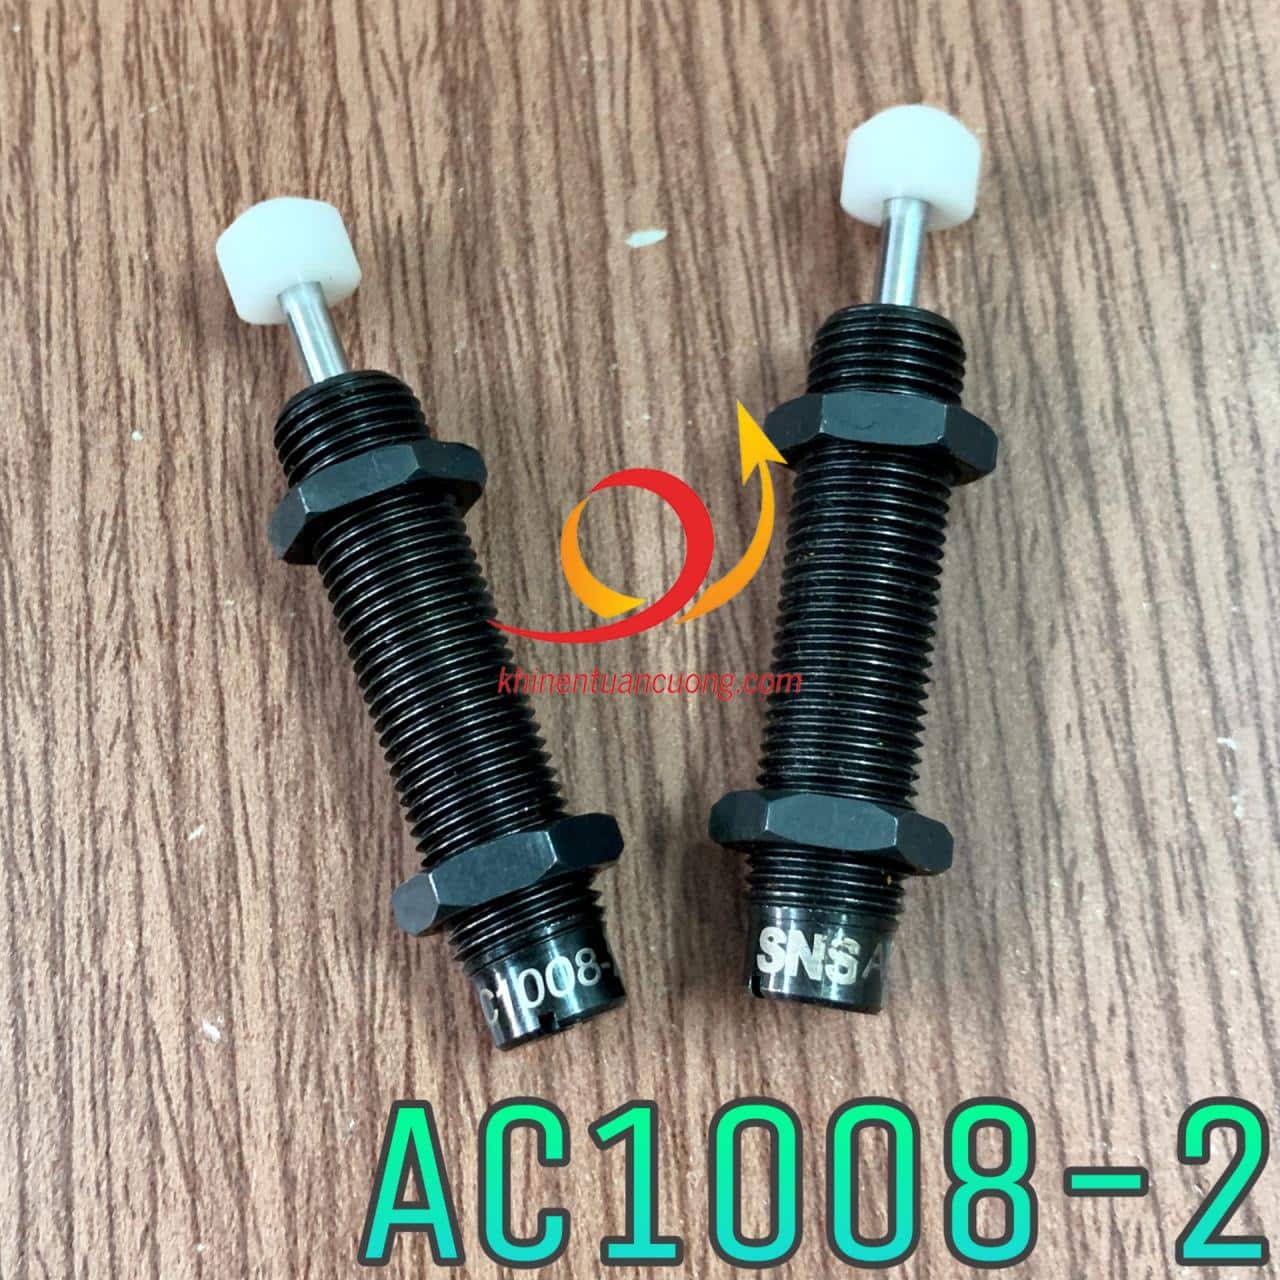 Dòng giảm chấn thủy lực AC1008 có 3 loại là AC1008-1 khả năng tải yếu, AC1008-2 khả năng tải vừa và AC1008-3 có khả năng tải nặng nhất